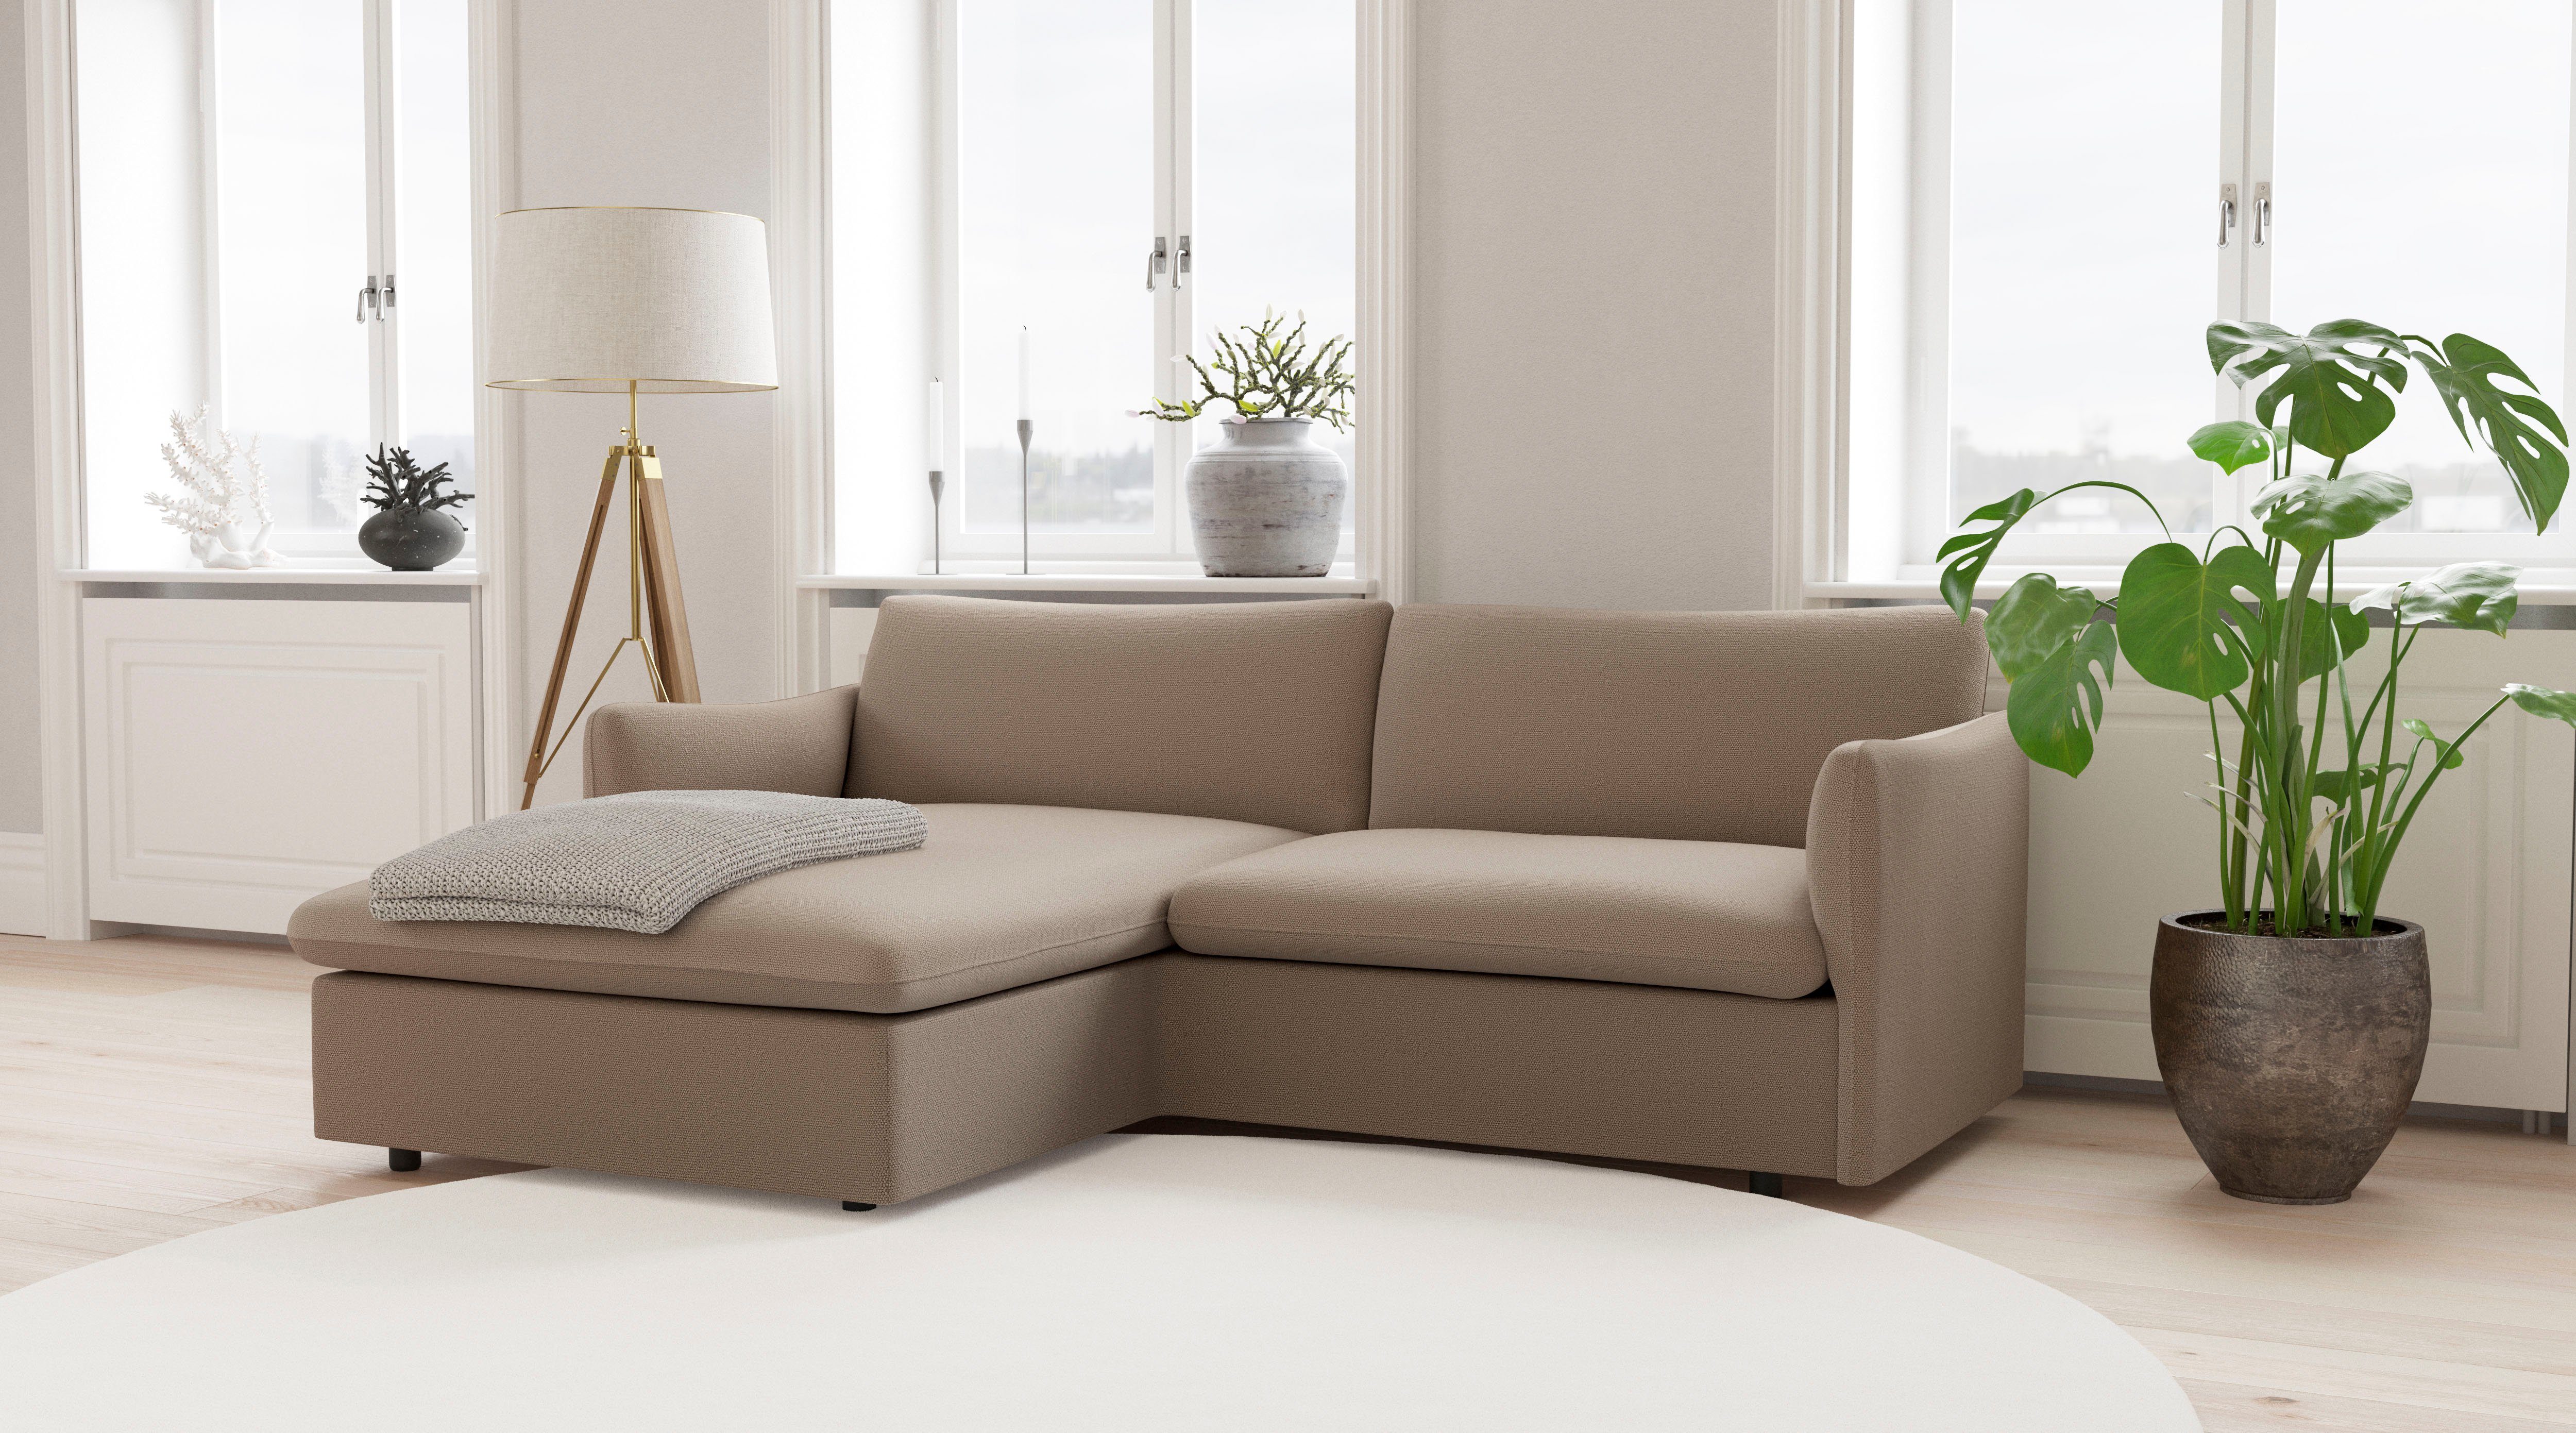 andas Ecksofa Imatra, in unterschiedliche verfügbar Sofakombinationen attraktiver Form